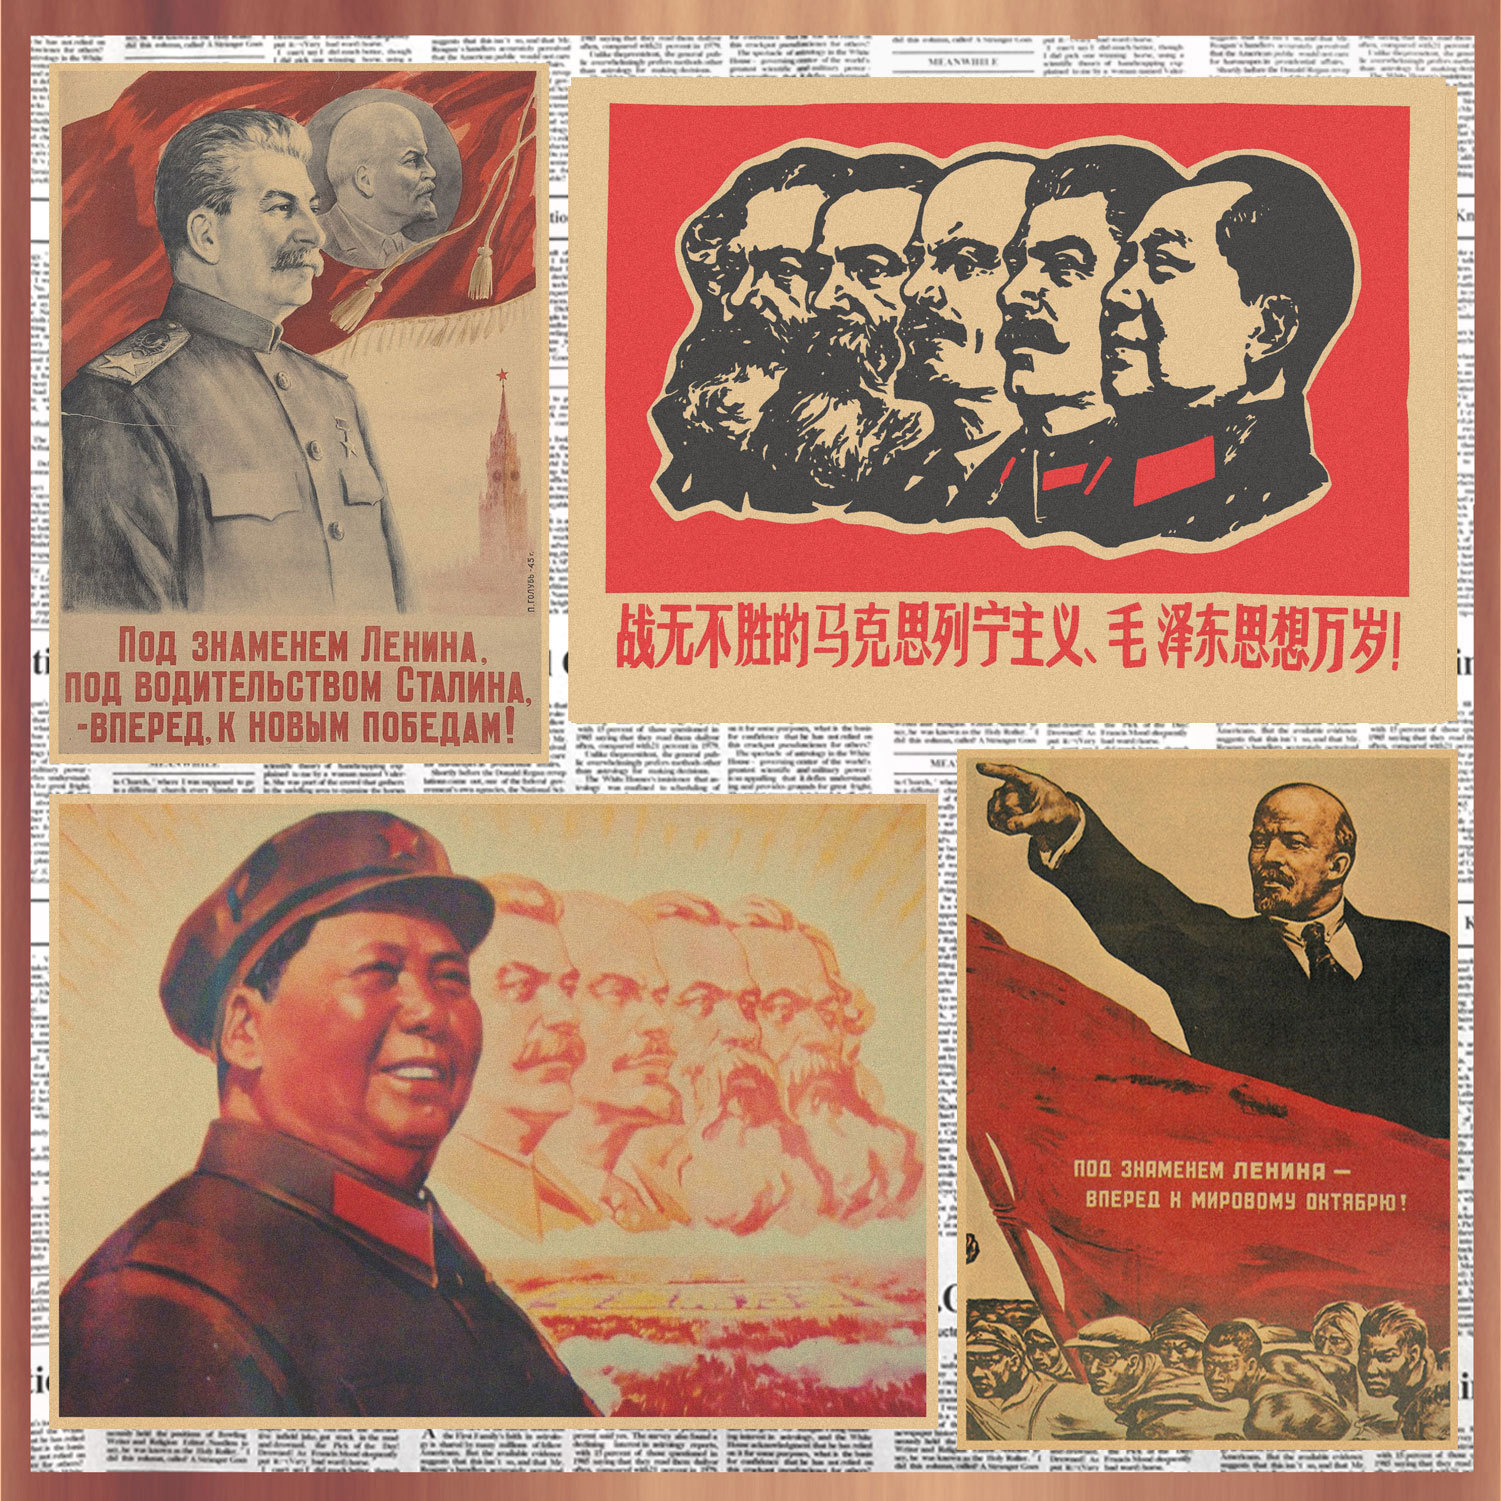 画之佳红色革命复古牛皮纸海报斯大林列宁马克思苏维埃政权装饰墙